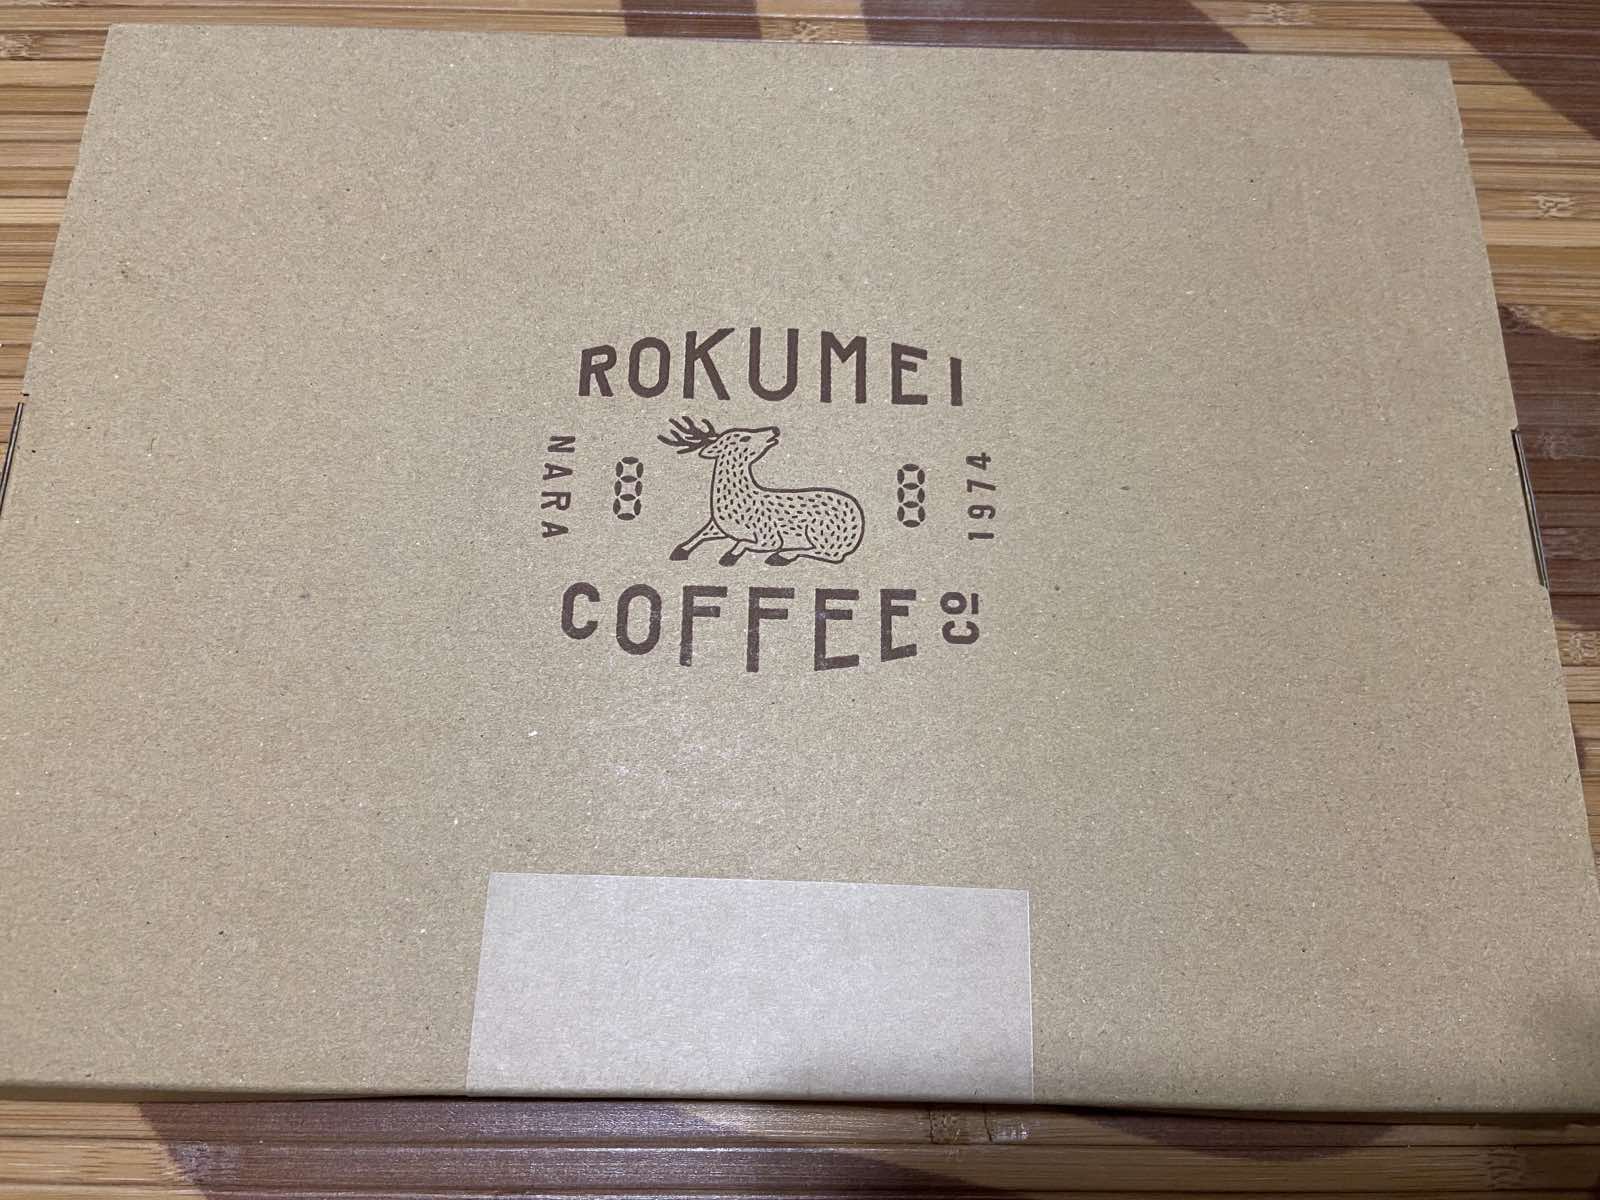 ロクメイコーヒーの箱